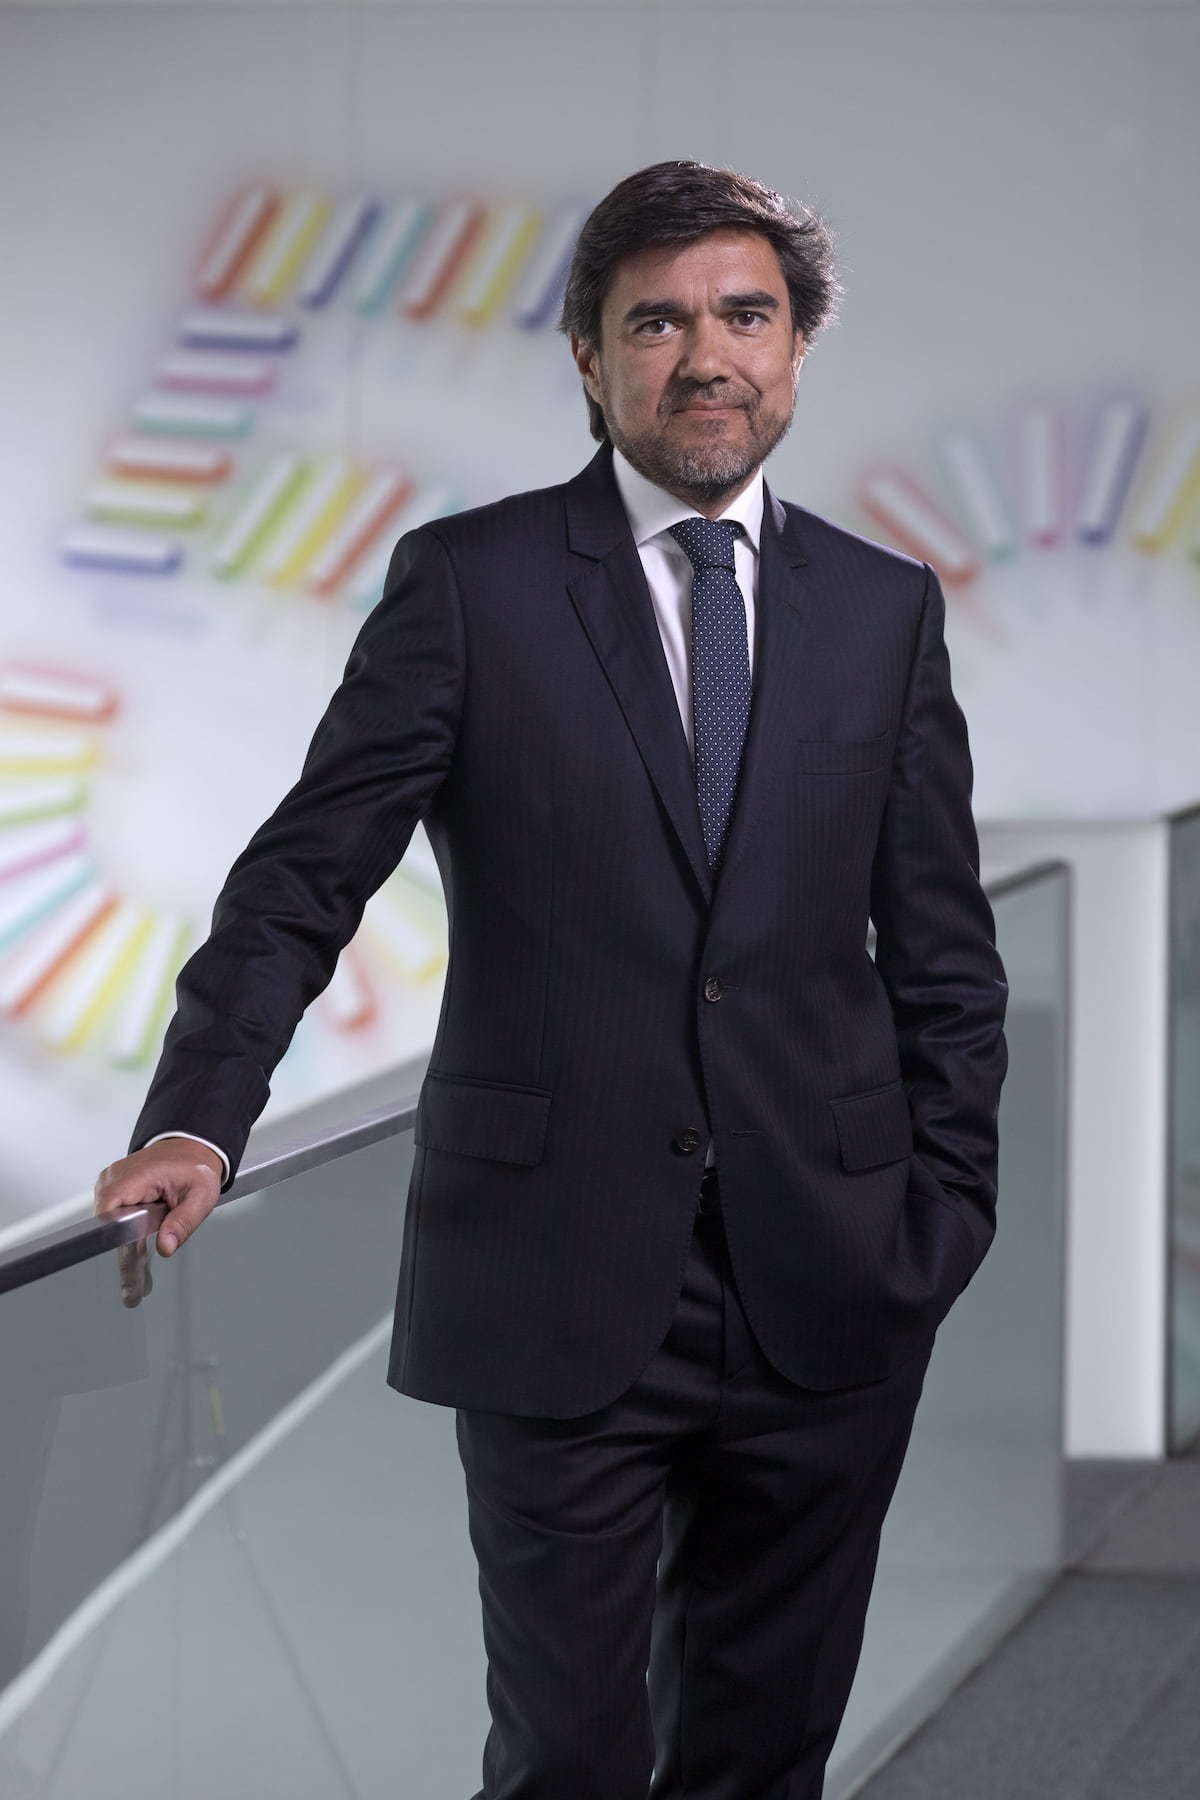 Miguel Almeida, CEO of NOS